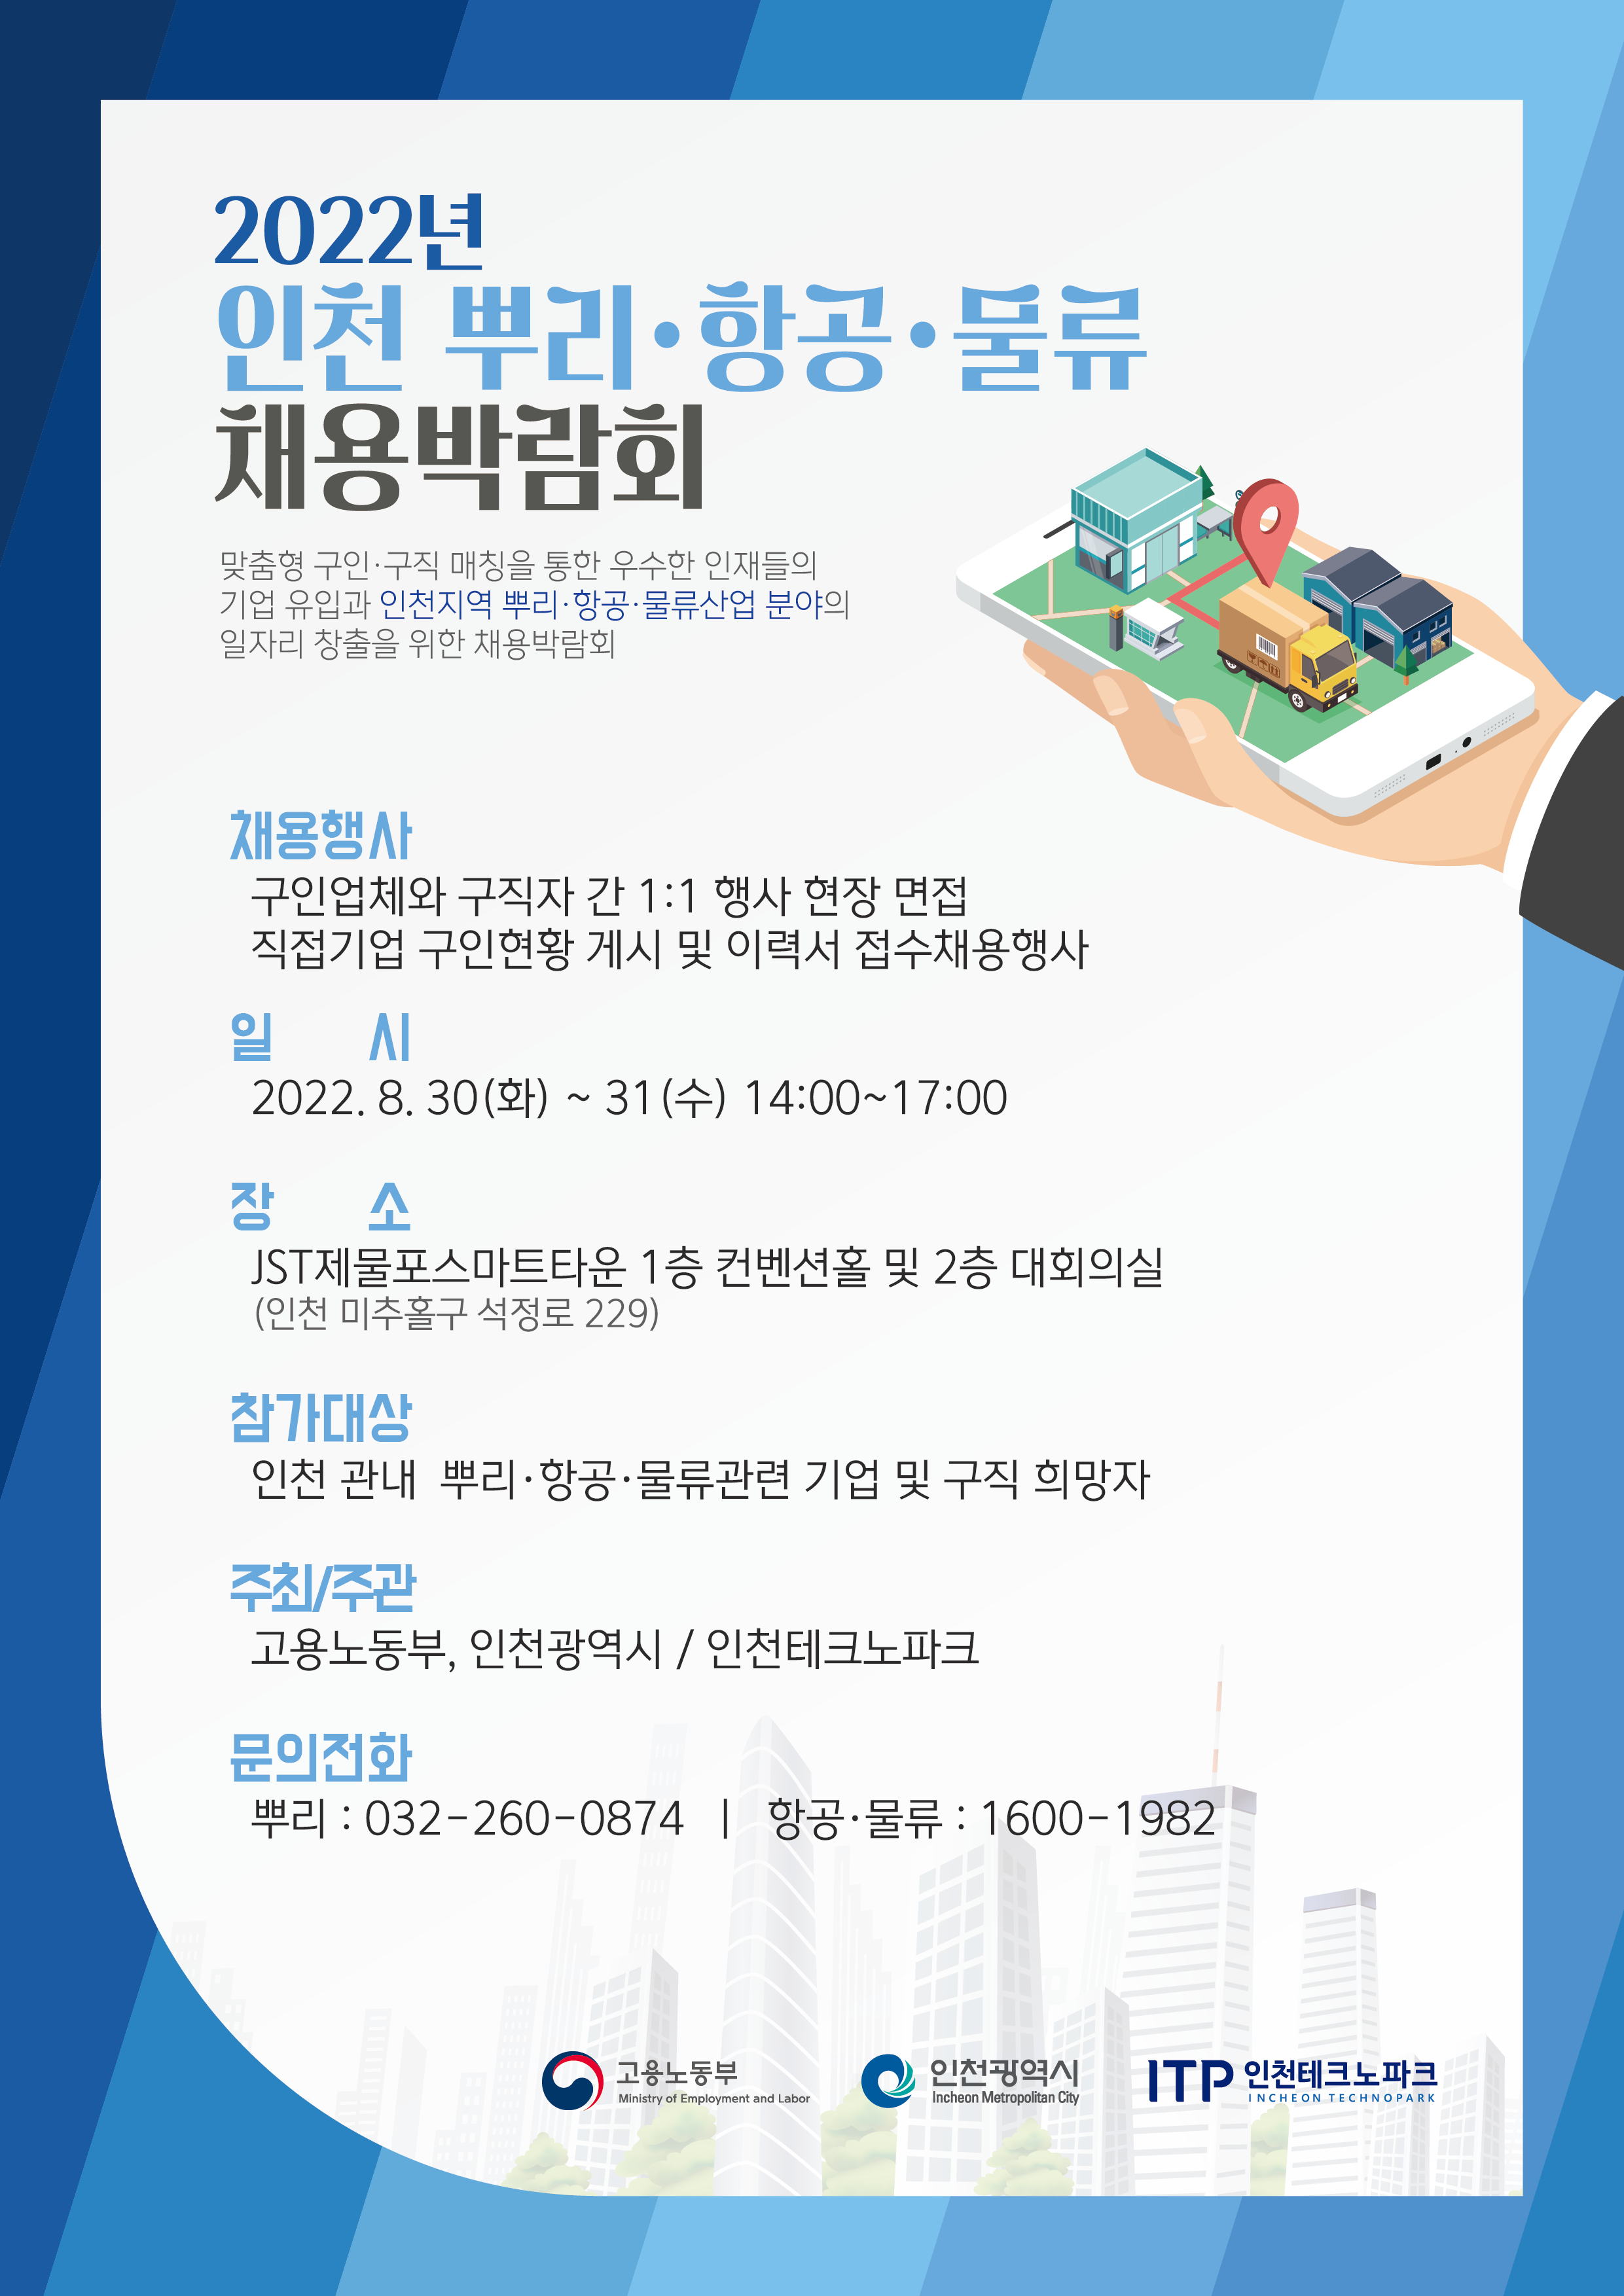 인천 뿌리항공물류 채용박람회